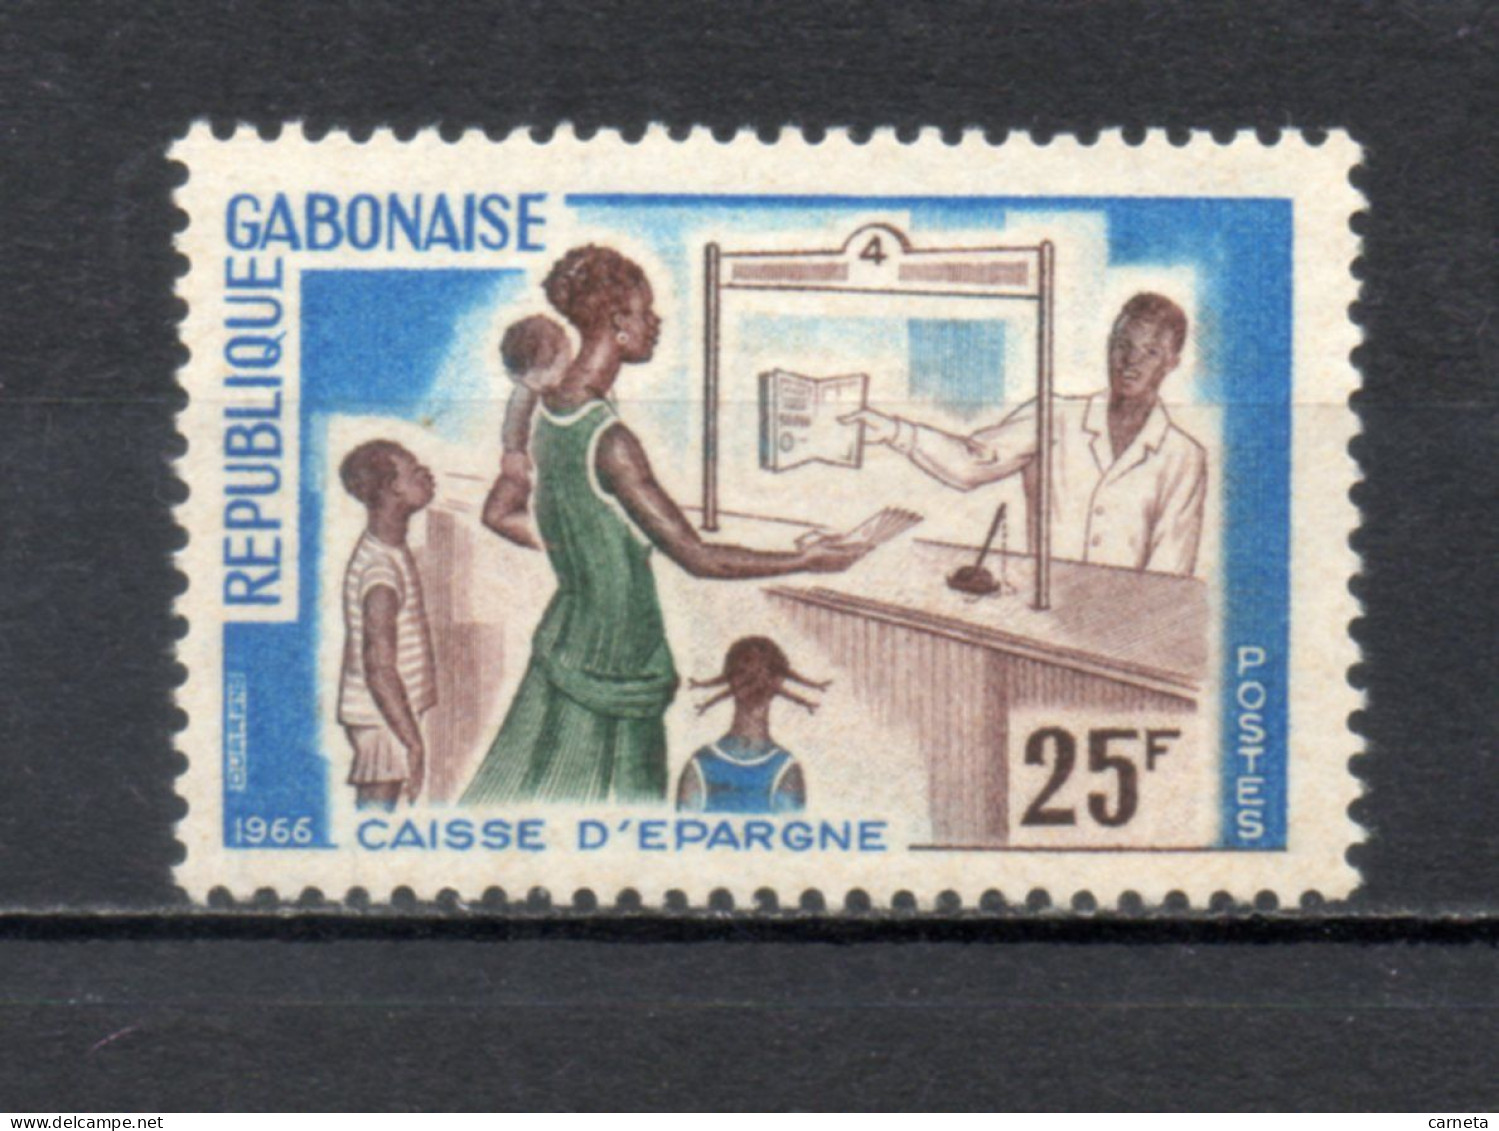 GABON  N° 198   NEUF SANS CHARNIERE COTE  1.00€    CAISSE D'EPARNE - Gabon